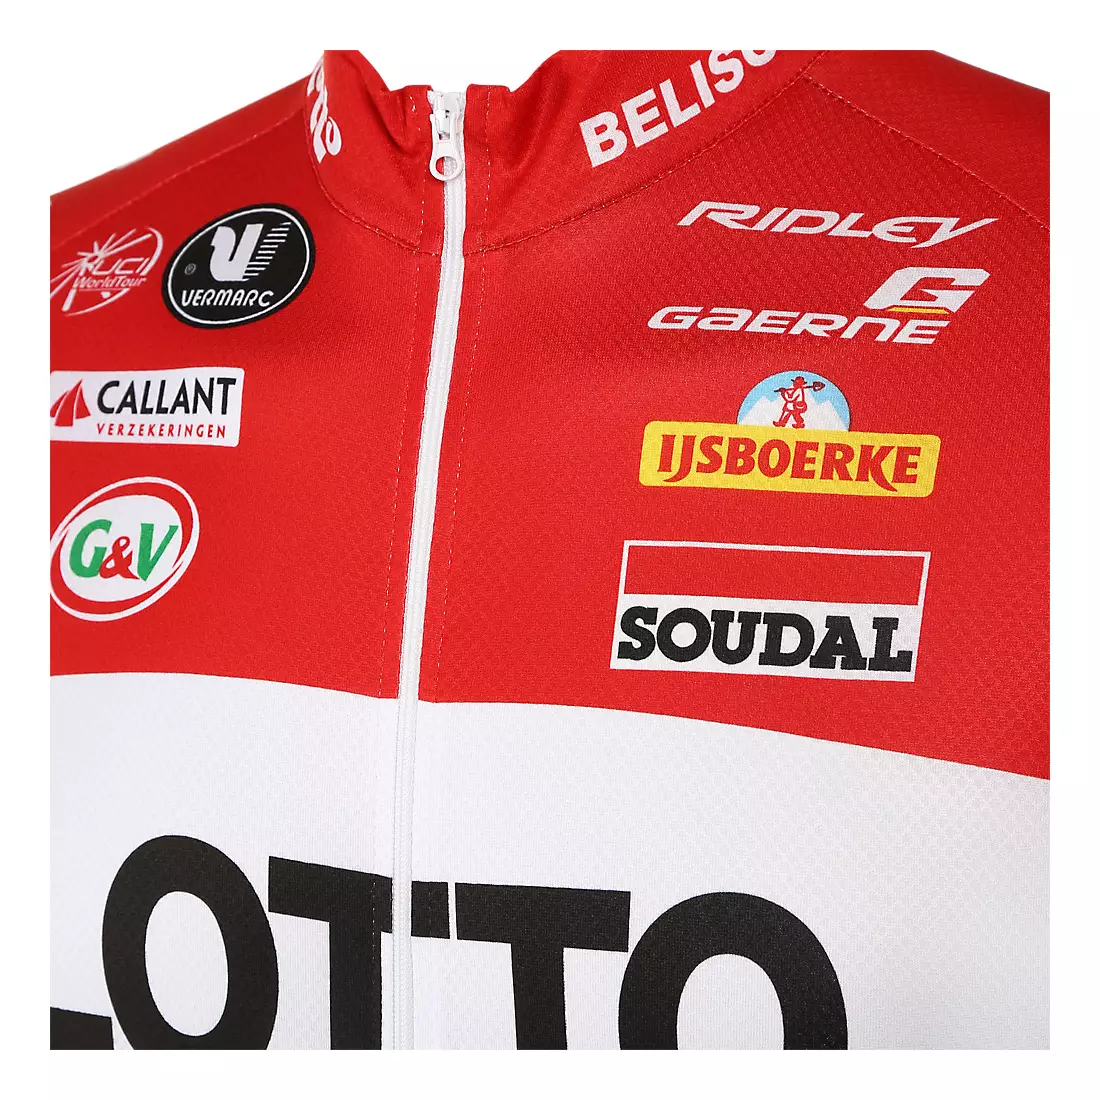 VERMARC - LOTTO BELISOL 2014 cyklistický dres, celopropínací